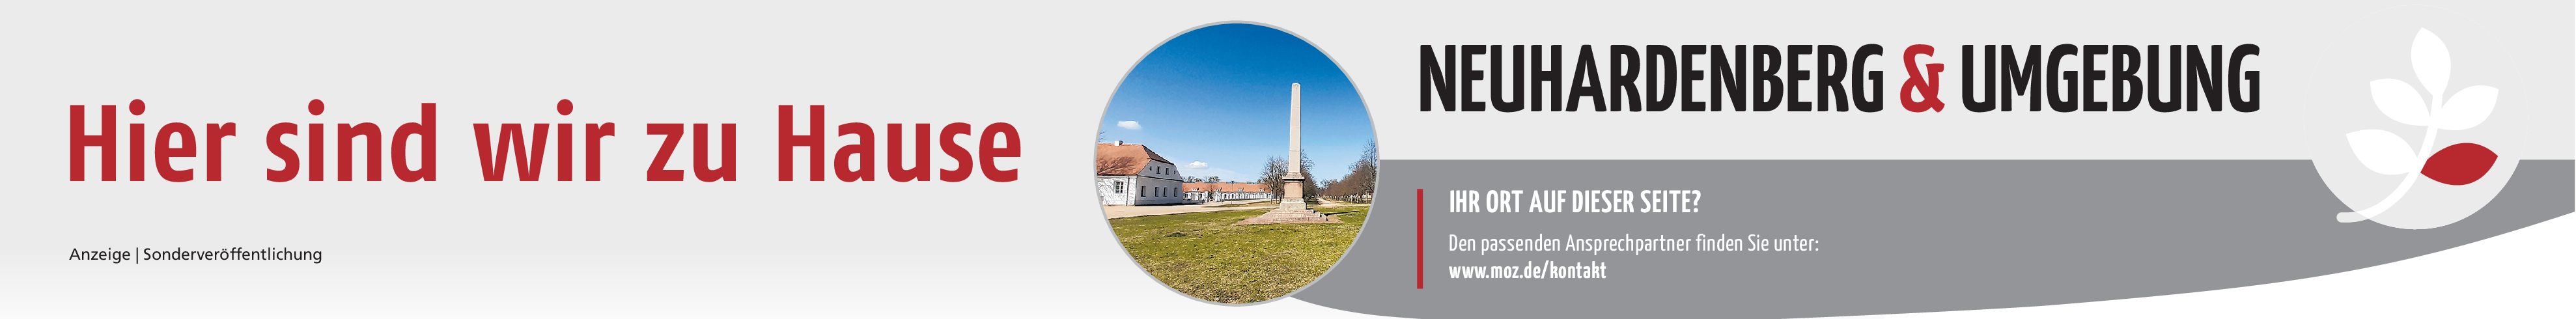 Kochs Fensterbau in Neuhardenberg: Gut zu tun im neuen Jahr